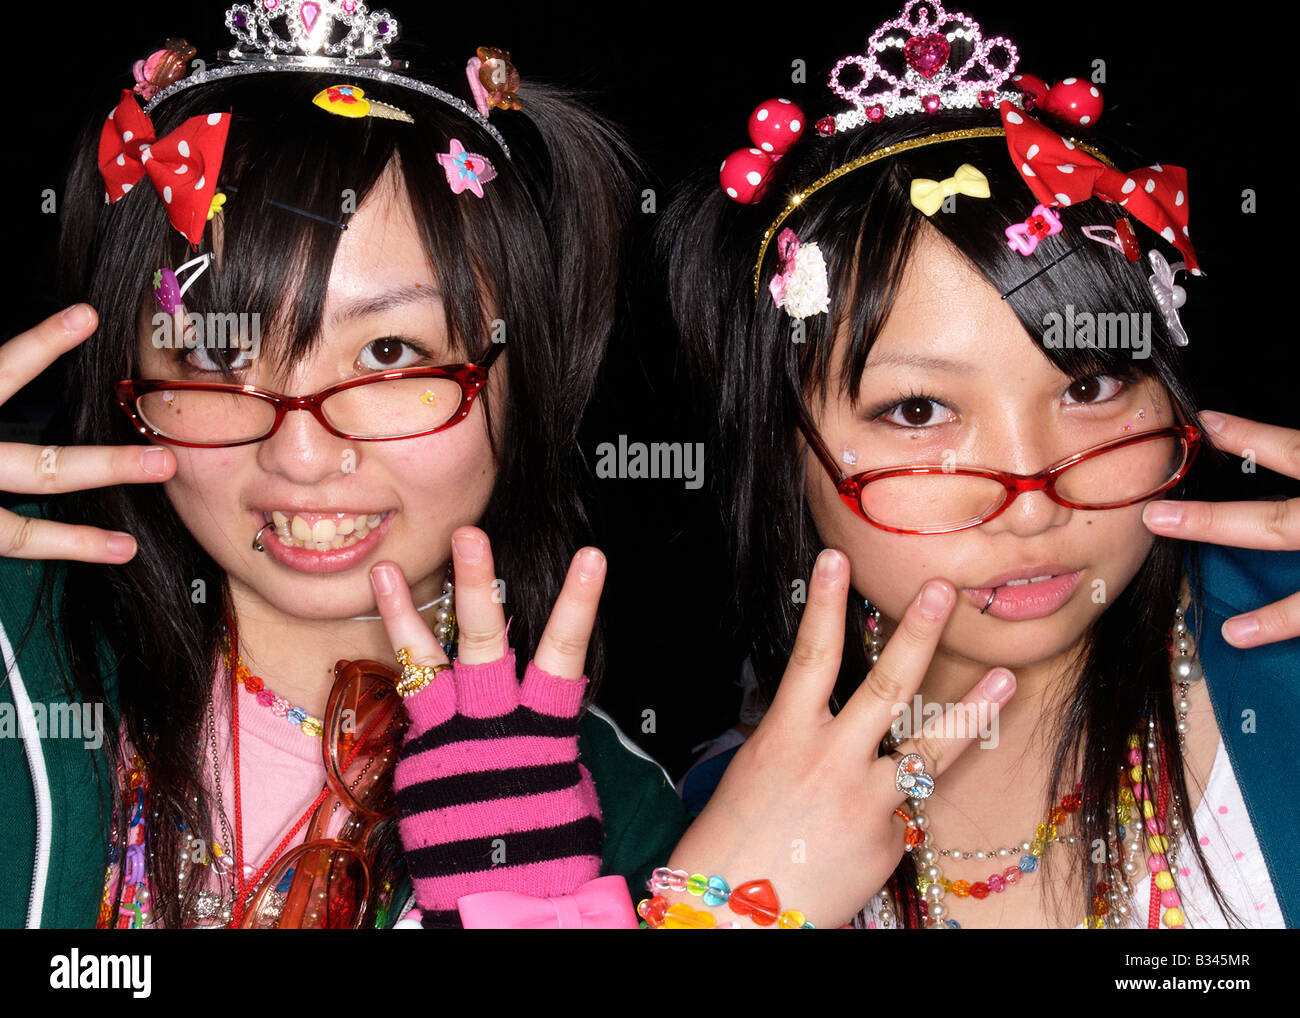 cos play zoku fashion fan in harajuku tokyo japan asia Stock Photo